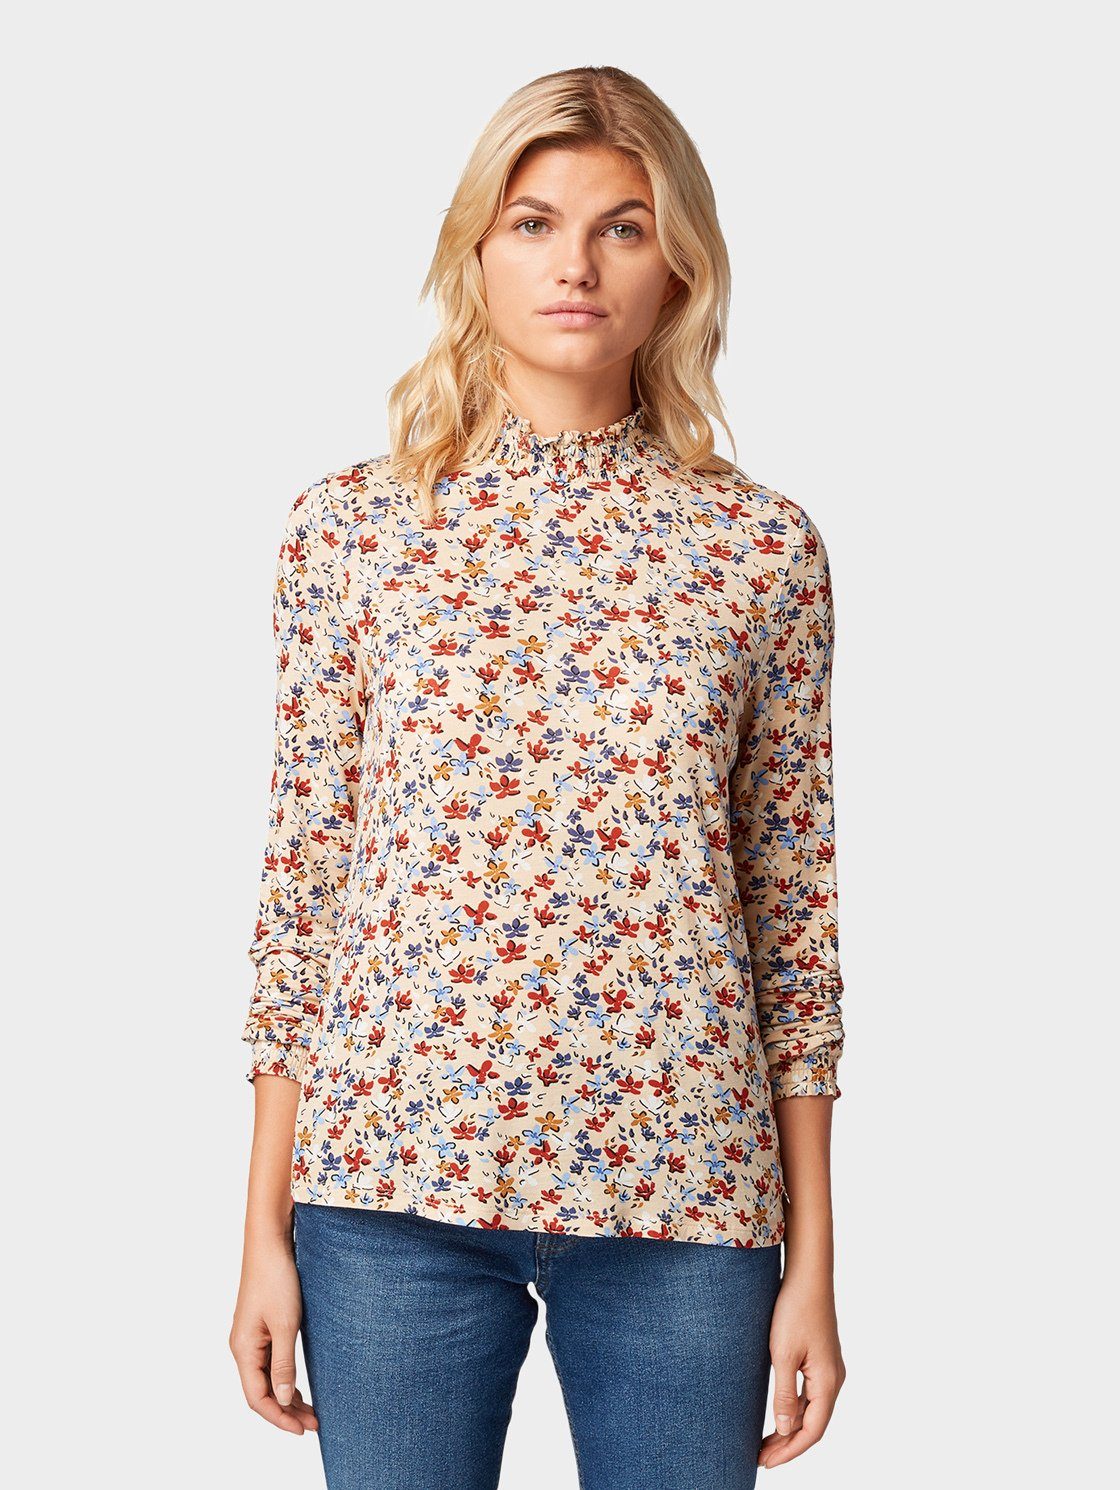 TOM TAILOR Denim Langarmshirt »Blusen-Shirt mit Blumenmuster« online kaufen  | OTTO